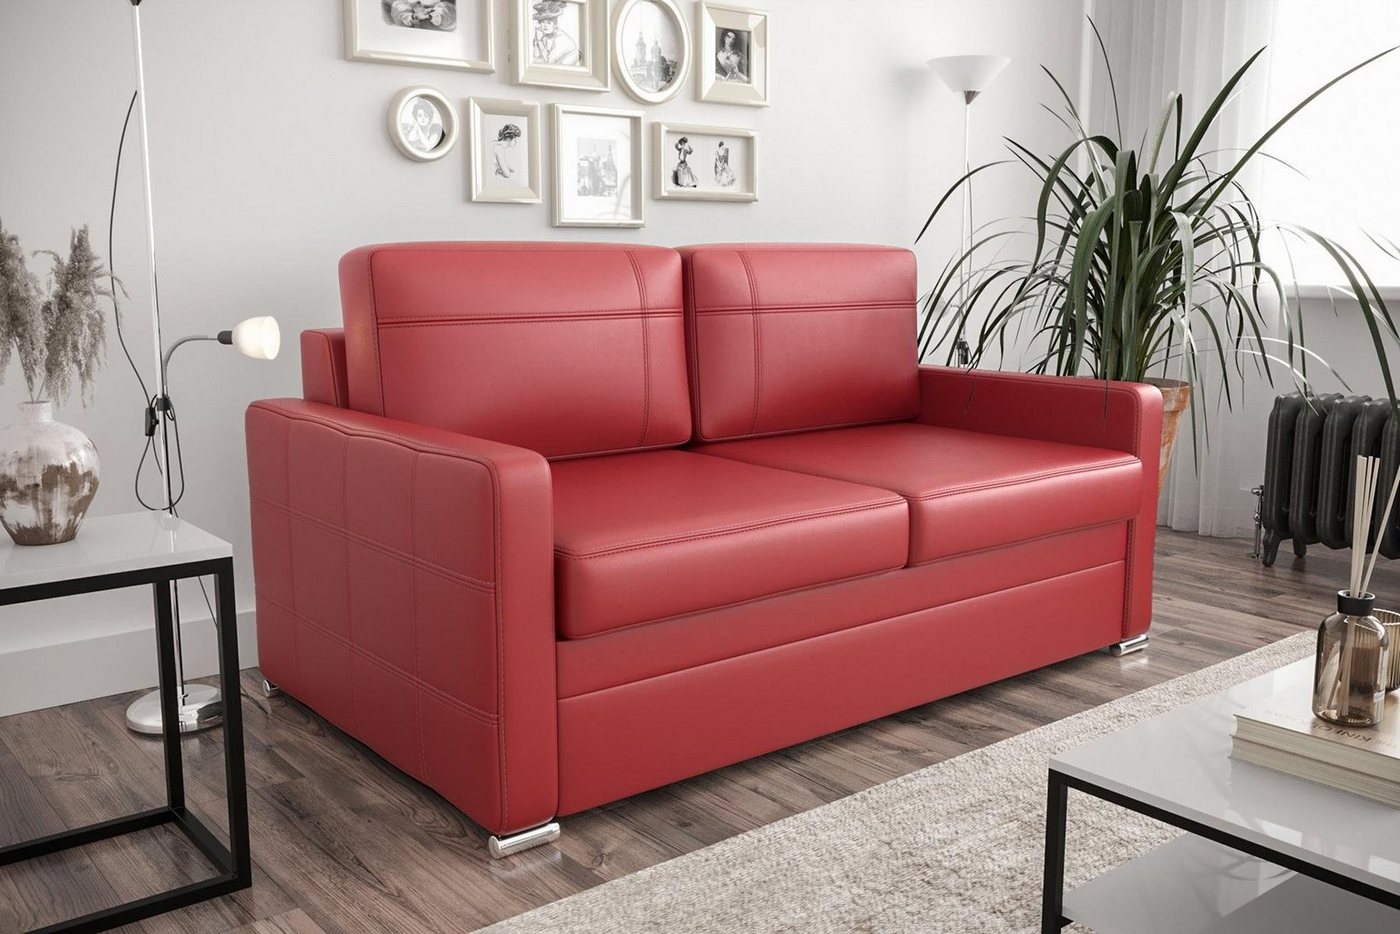 JVmoebel Sofa Designer 2-Sitzer Sofa Luxus Couch Polster Zweisitzer Couchen, Made in Europe von JVmoebel